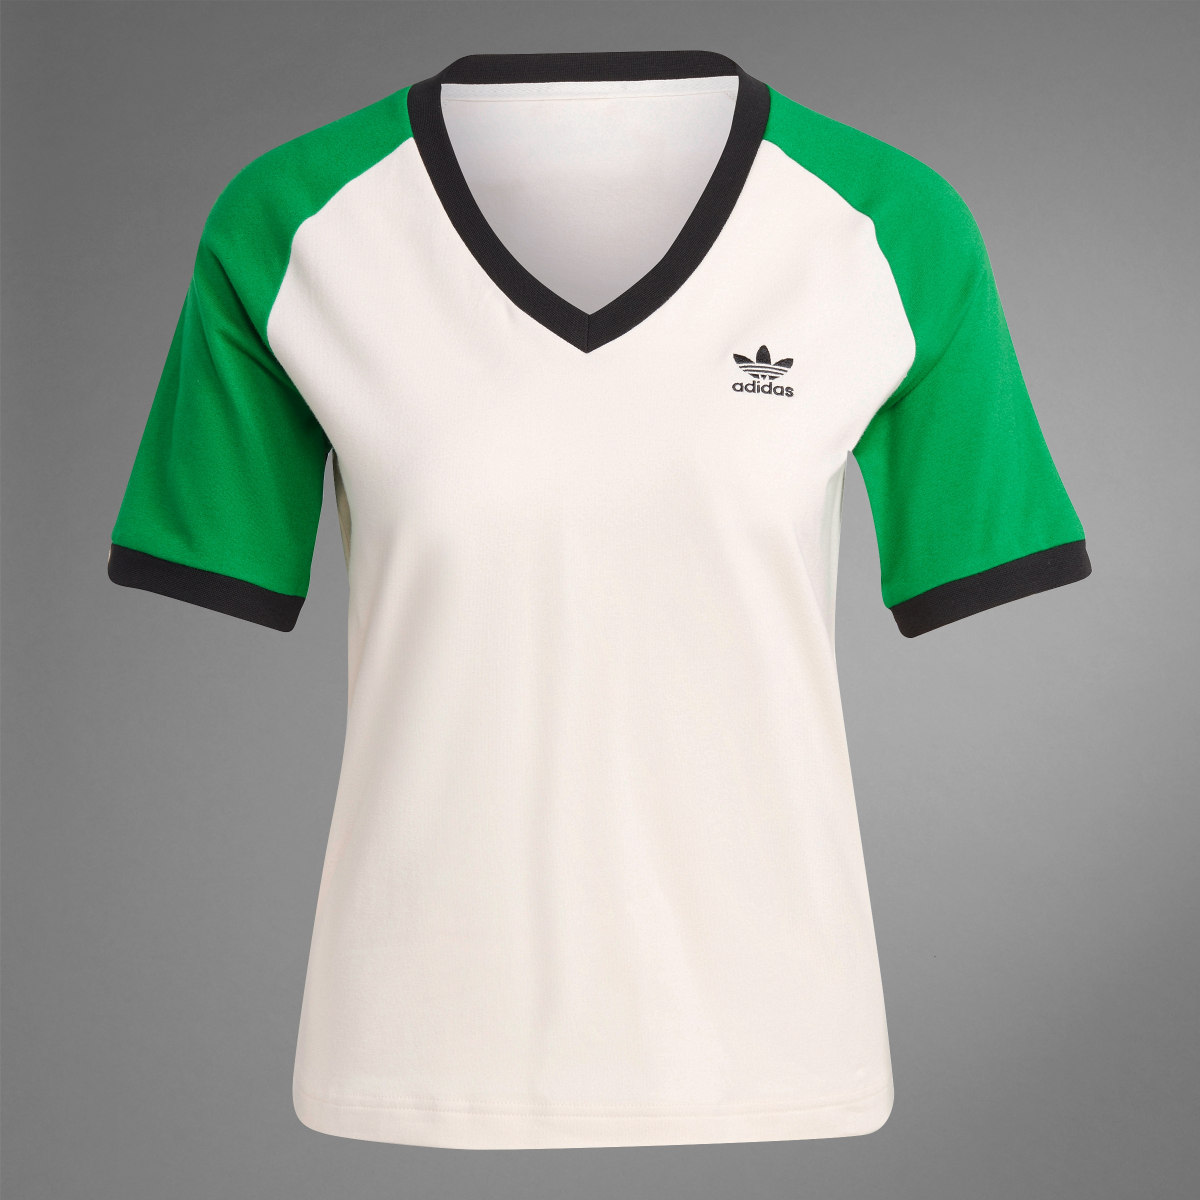 Adidas T-shirt de Gola em V Adicolor 70s. 10